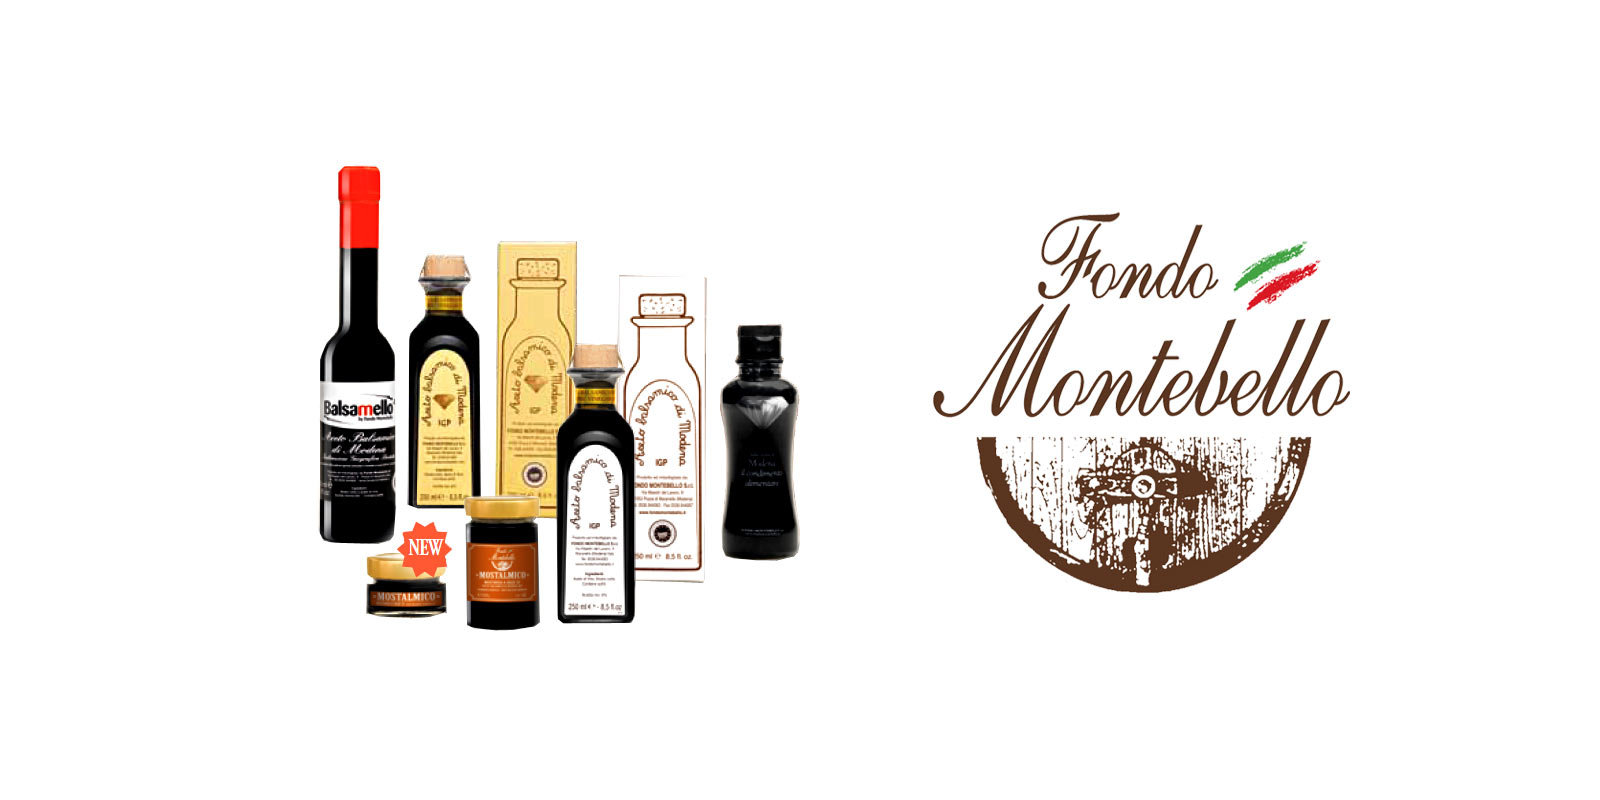 Aceto Balsamico Fondo Montebello Fondo Montebello foloseste metode de productie stravechi si traditionale pentru a produce un otet balsamic excelent din regiunea Maranello din Italia.